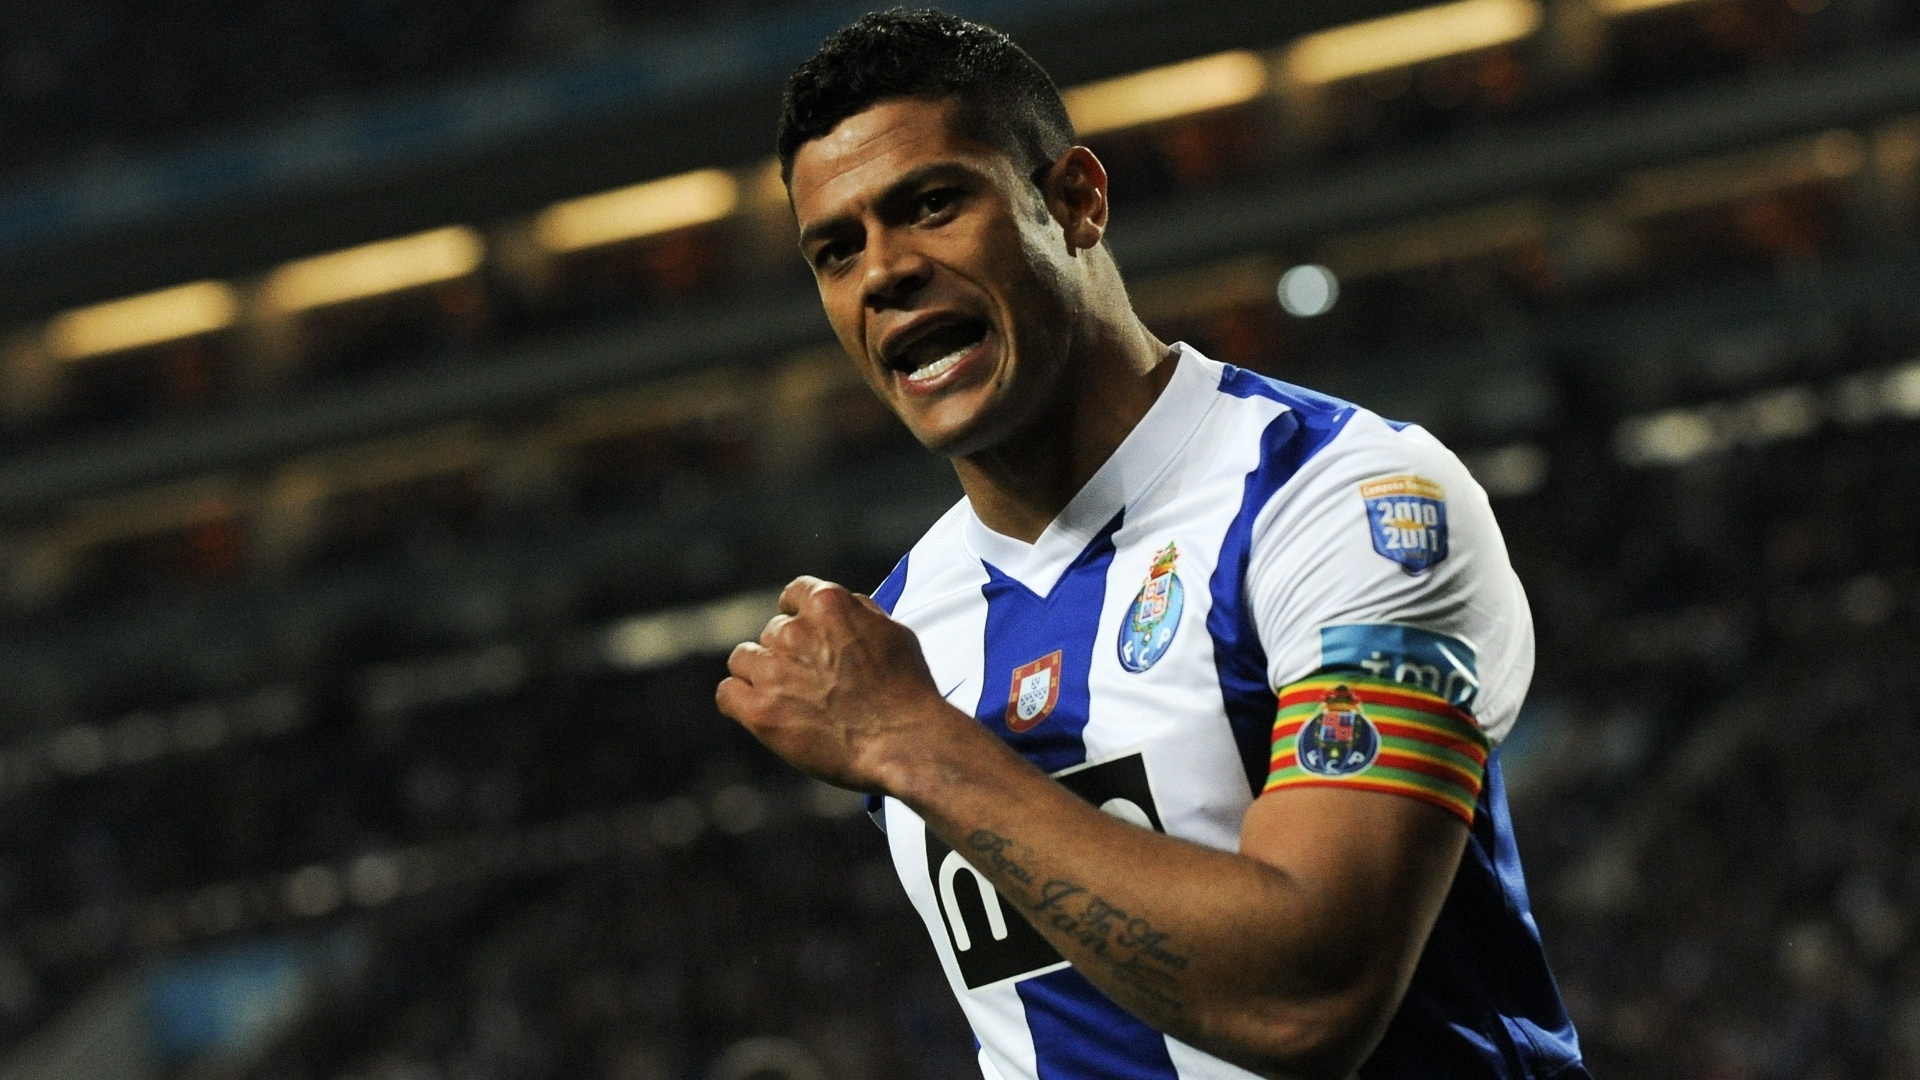 Hulk comemora após marcar no empate do Porto com a Académica por 1 a 1